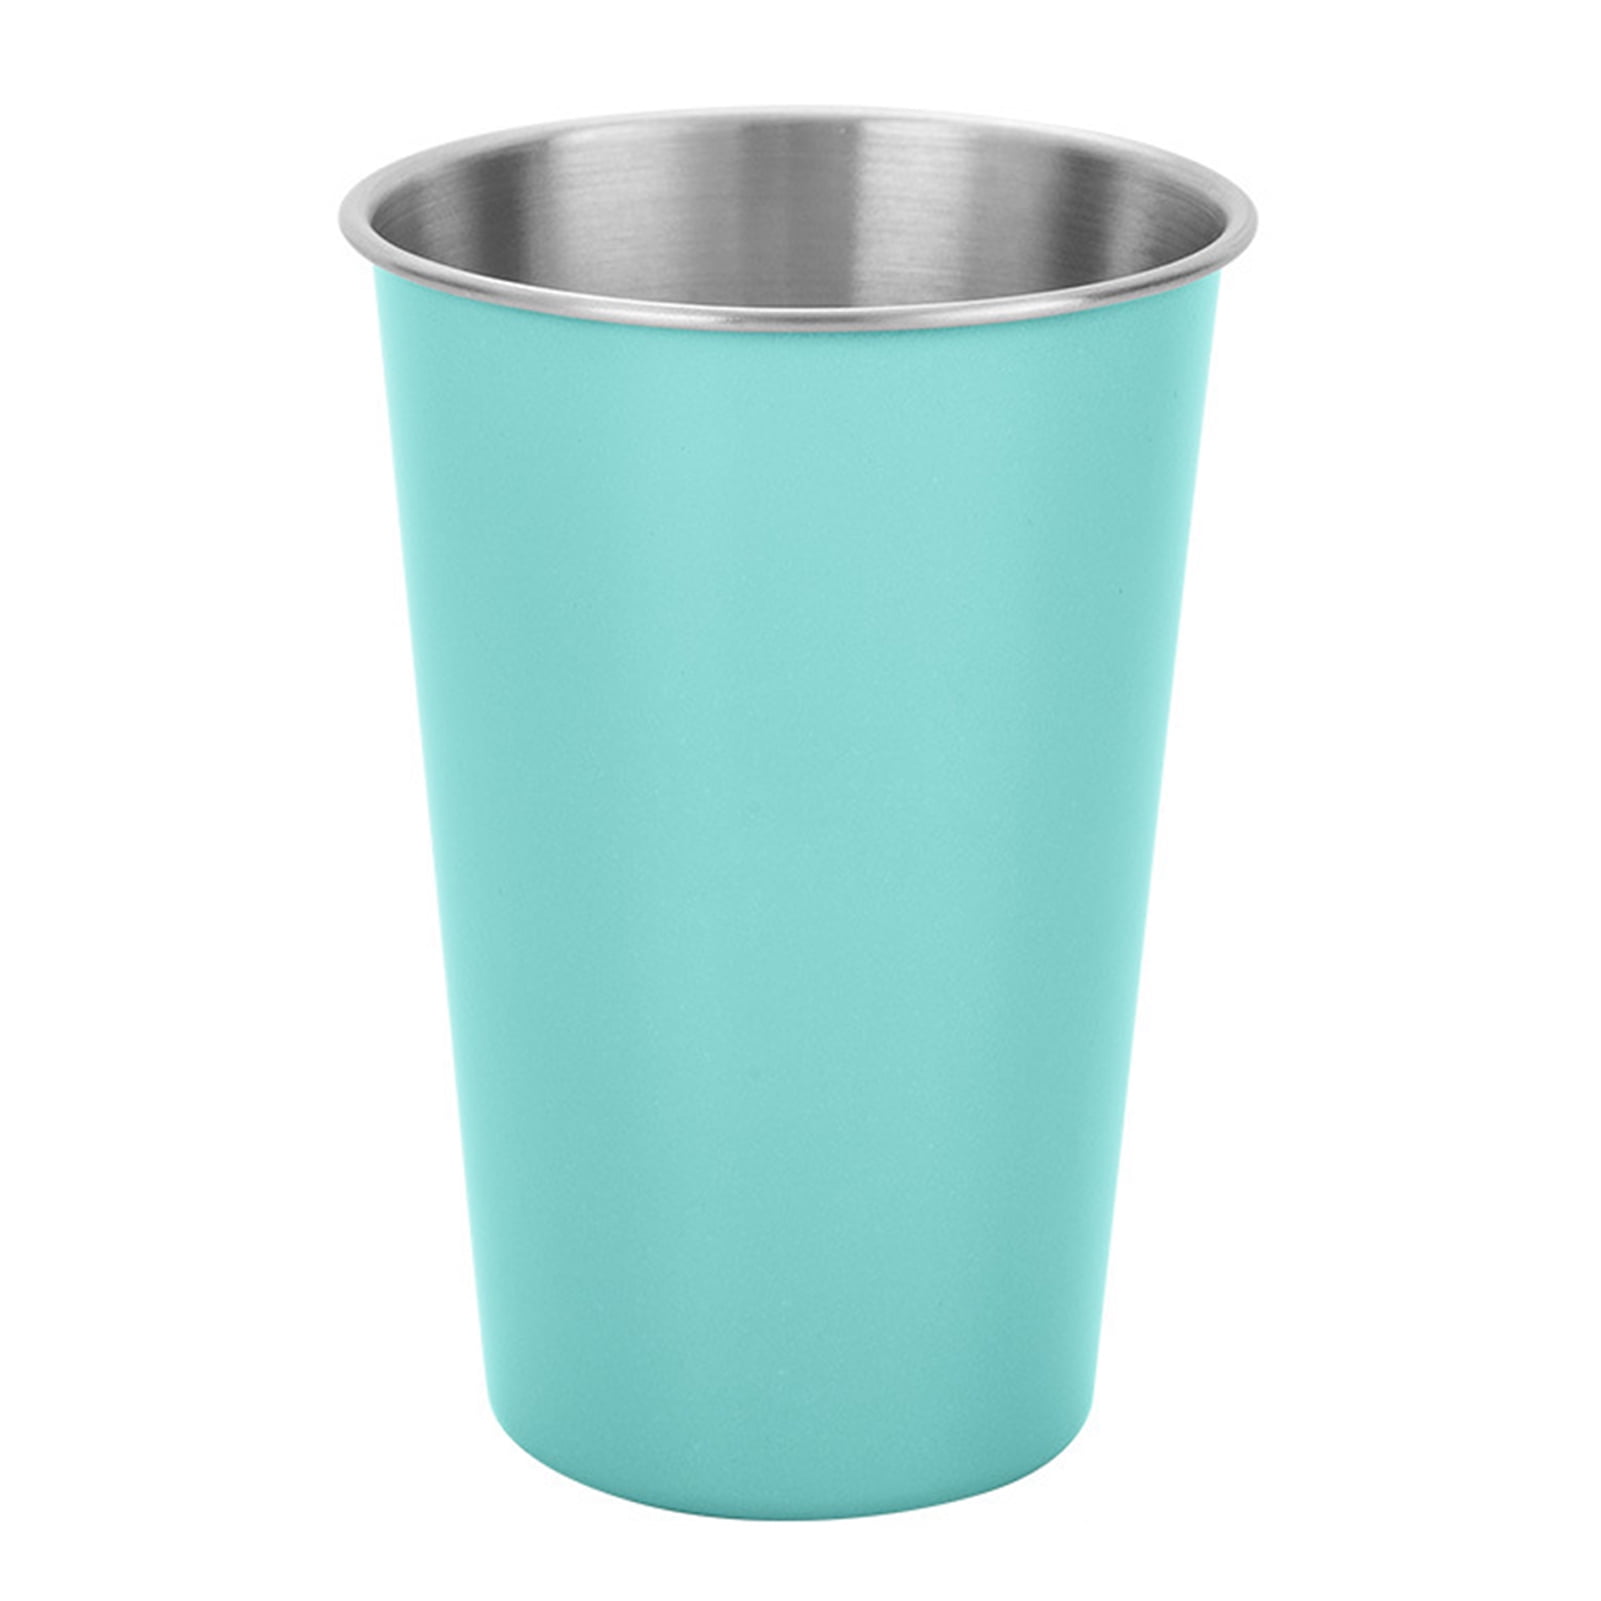 #1 Premium Stainless Steel Cups 16 oz/ 475ml Pint Cup Tumbler (4 Pack) by  Greens Steel - Premium Met…See more #1 Premium Stainless Steel Cups 16 oz/